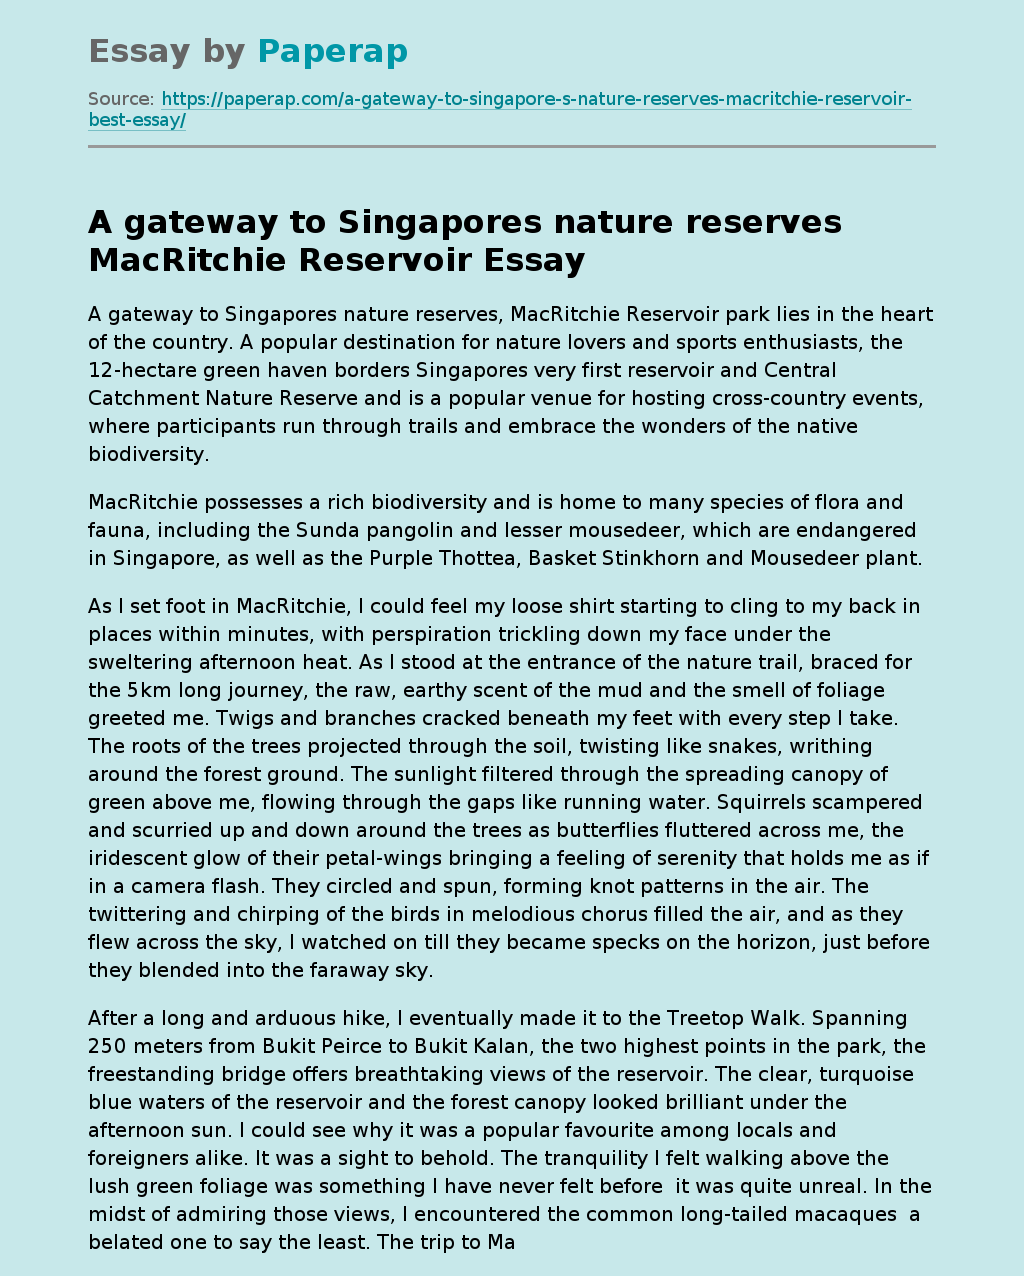 A Gateway to Singapores Nature Reserves MacRitchie Reservoir